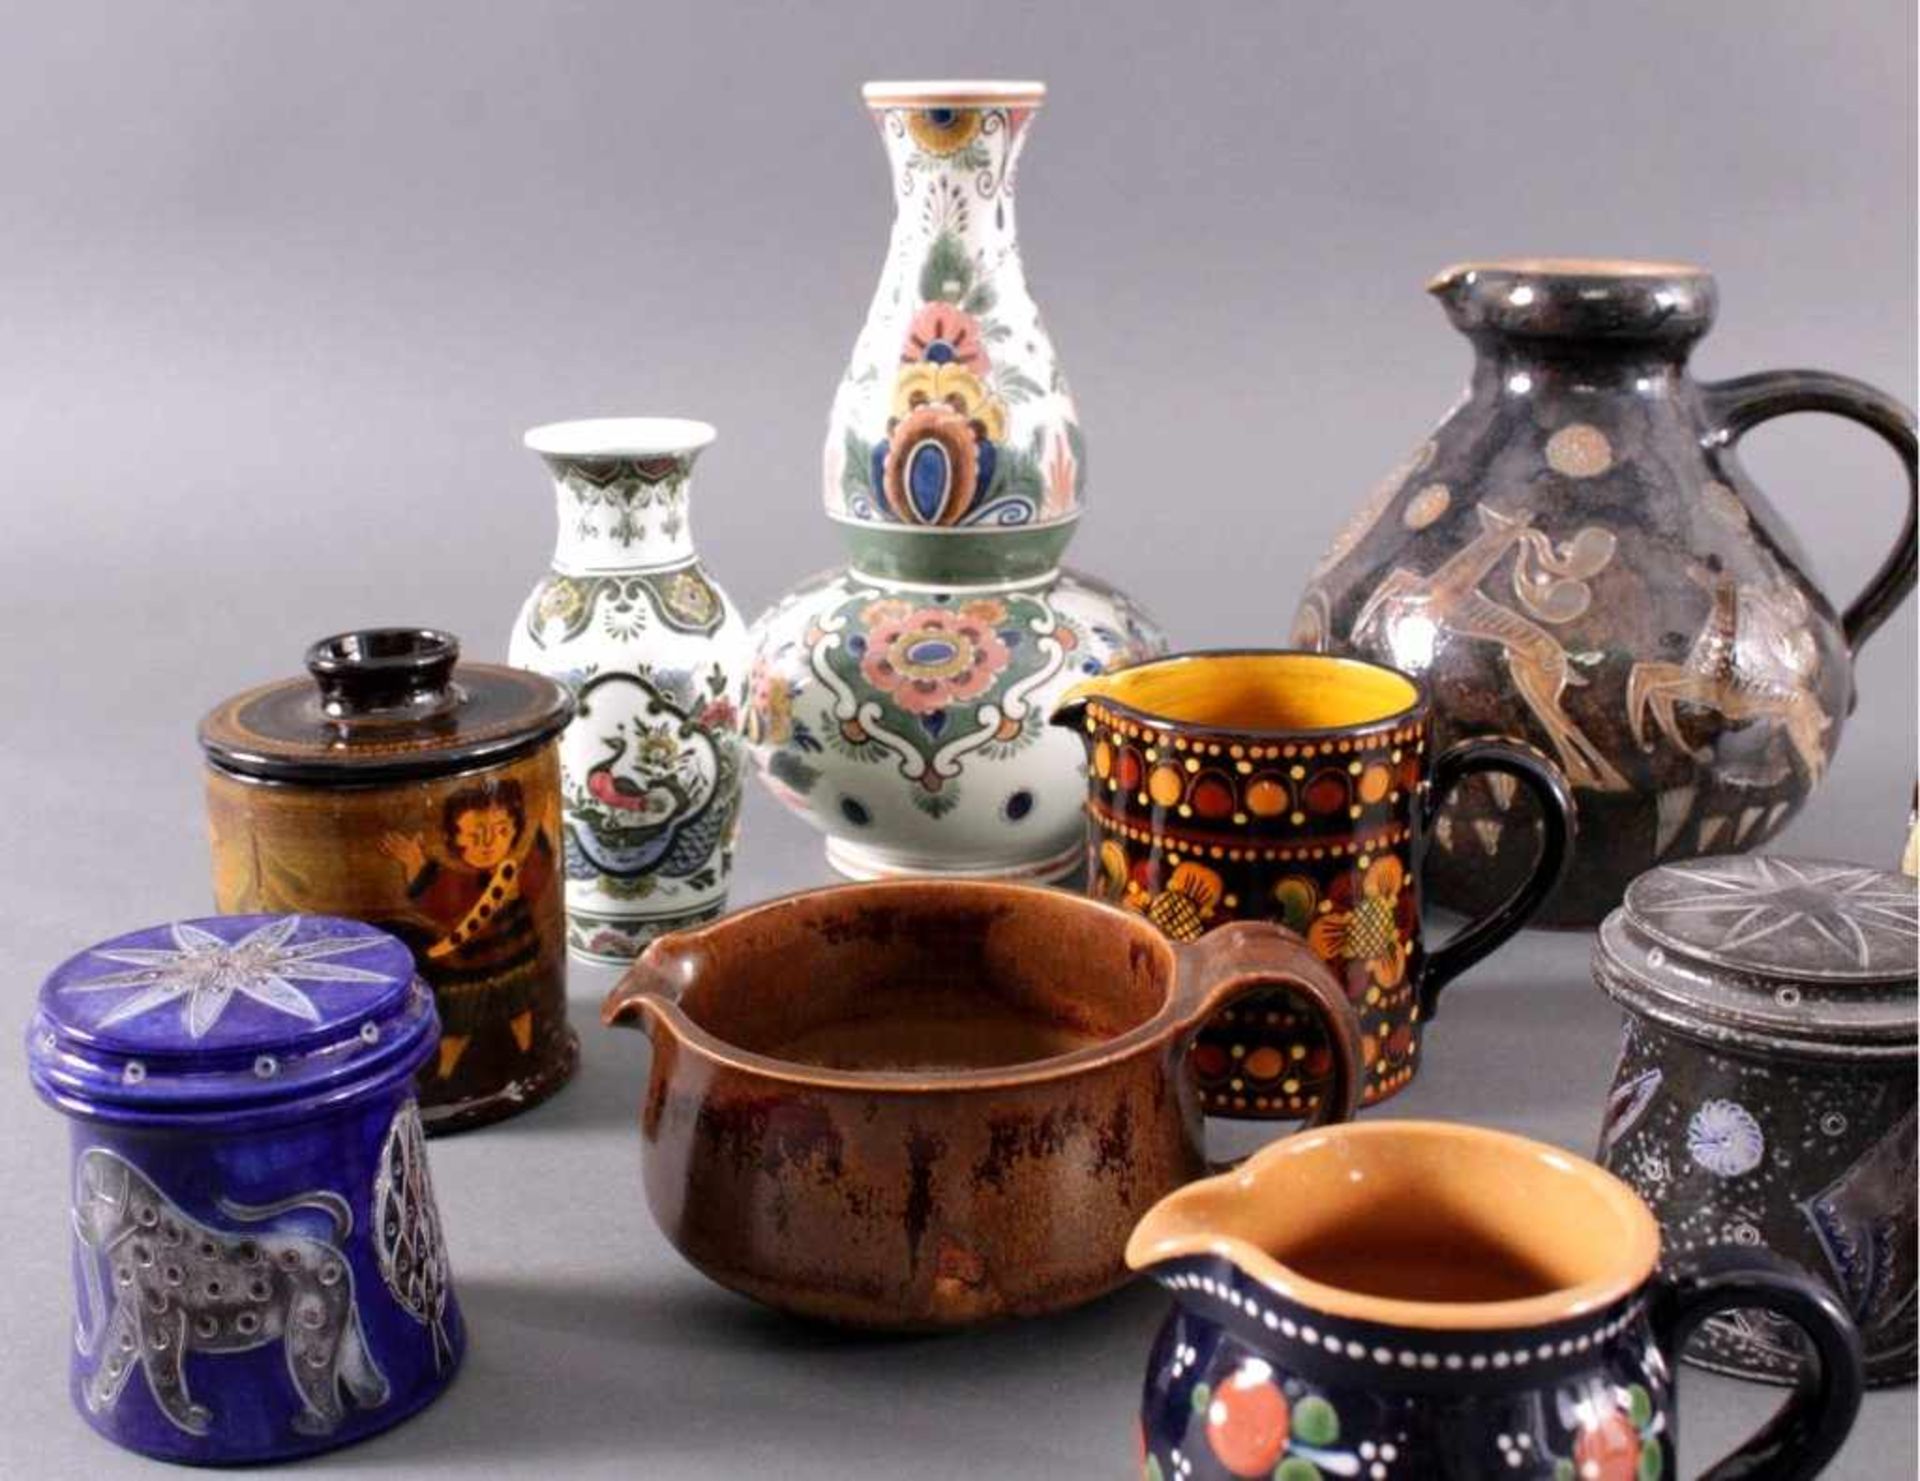 Keramik Konvolut11 Teile, Vasen, Henkelkannen, Deckeldose...Unterschiedliche Manufakturen, Formen, - Bild 2 aus 3